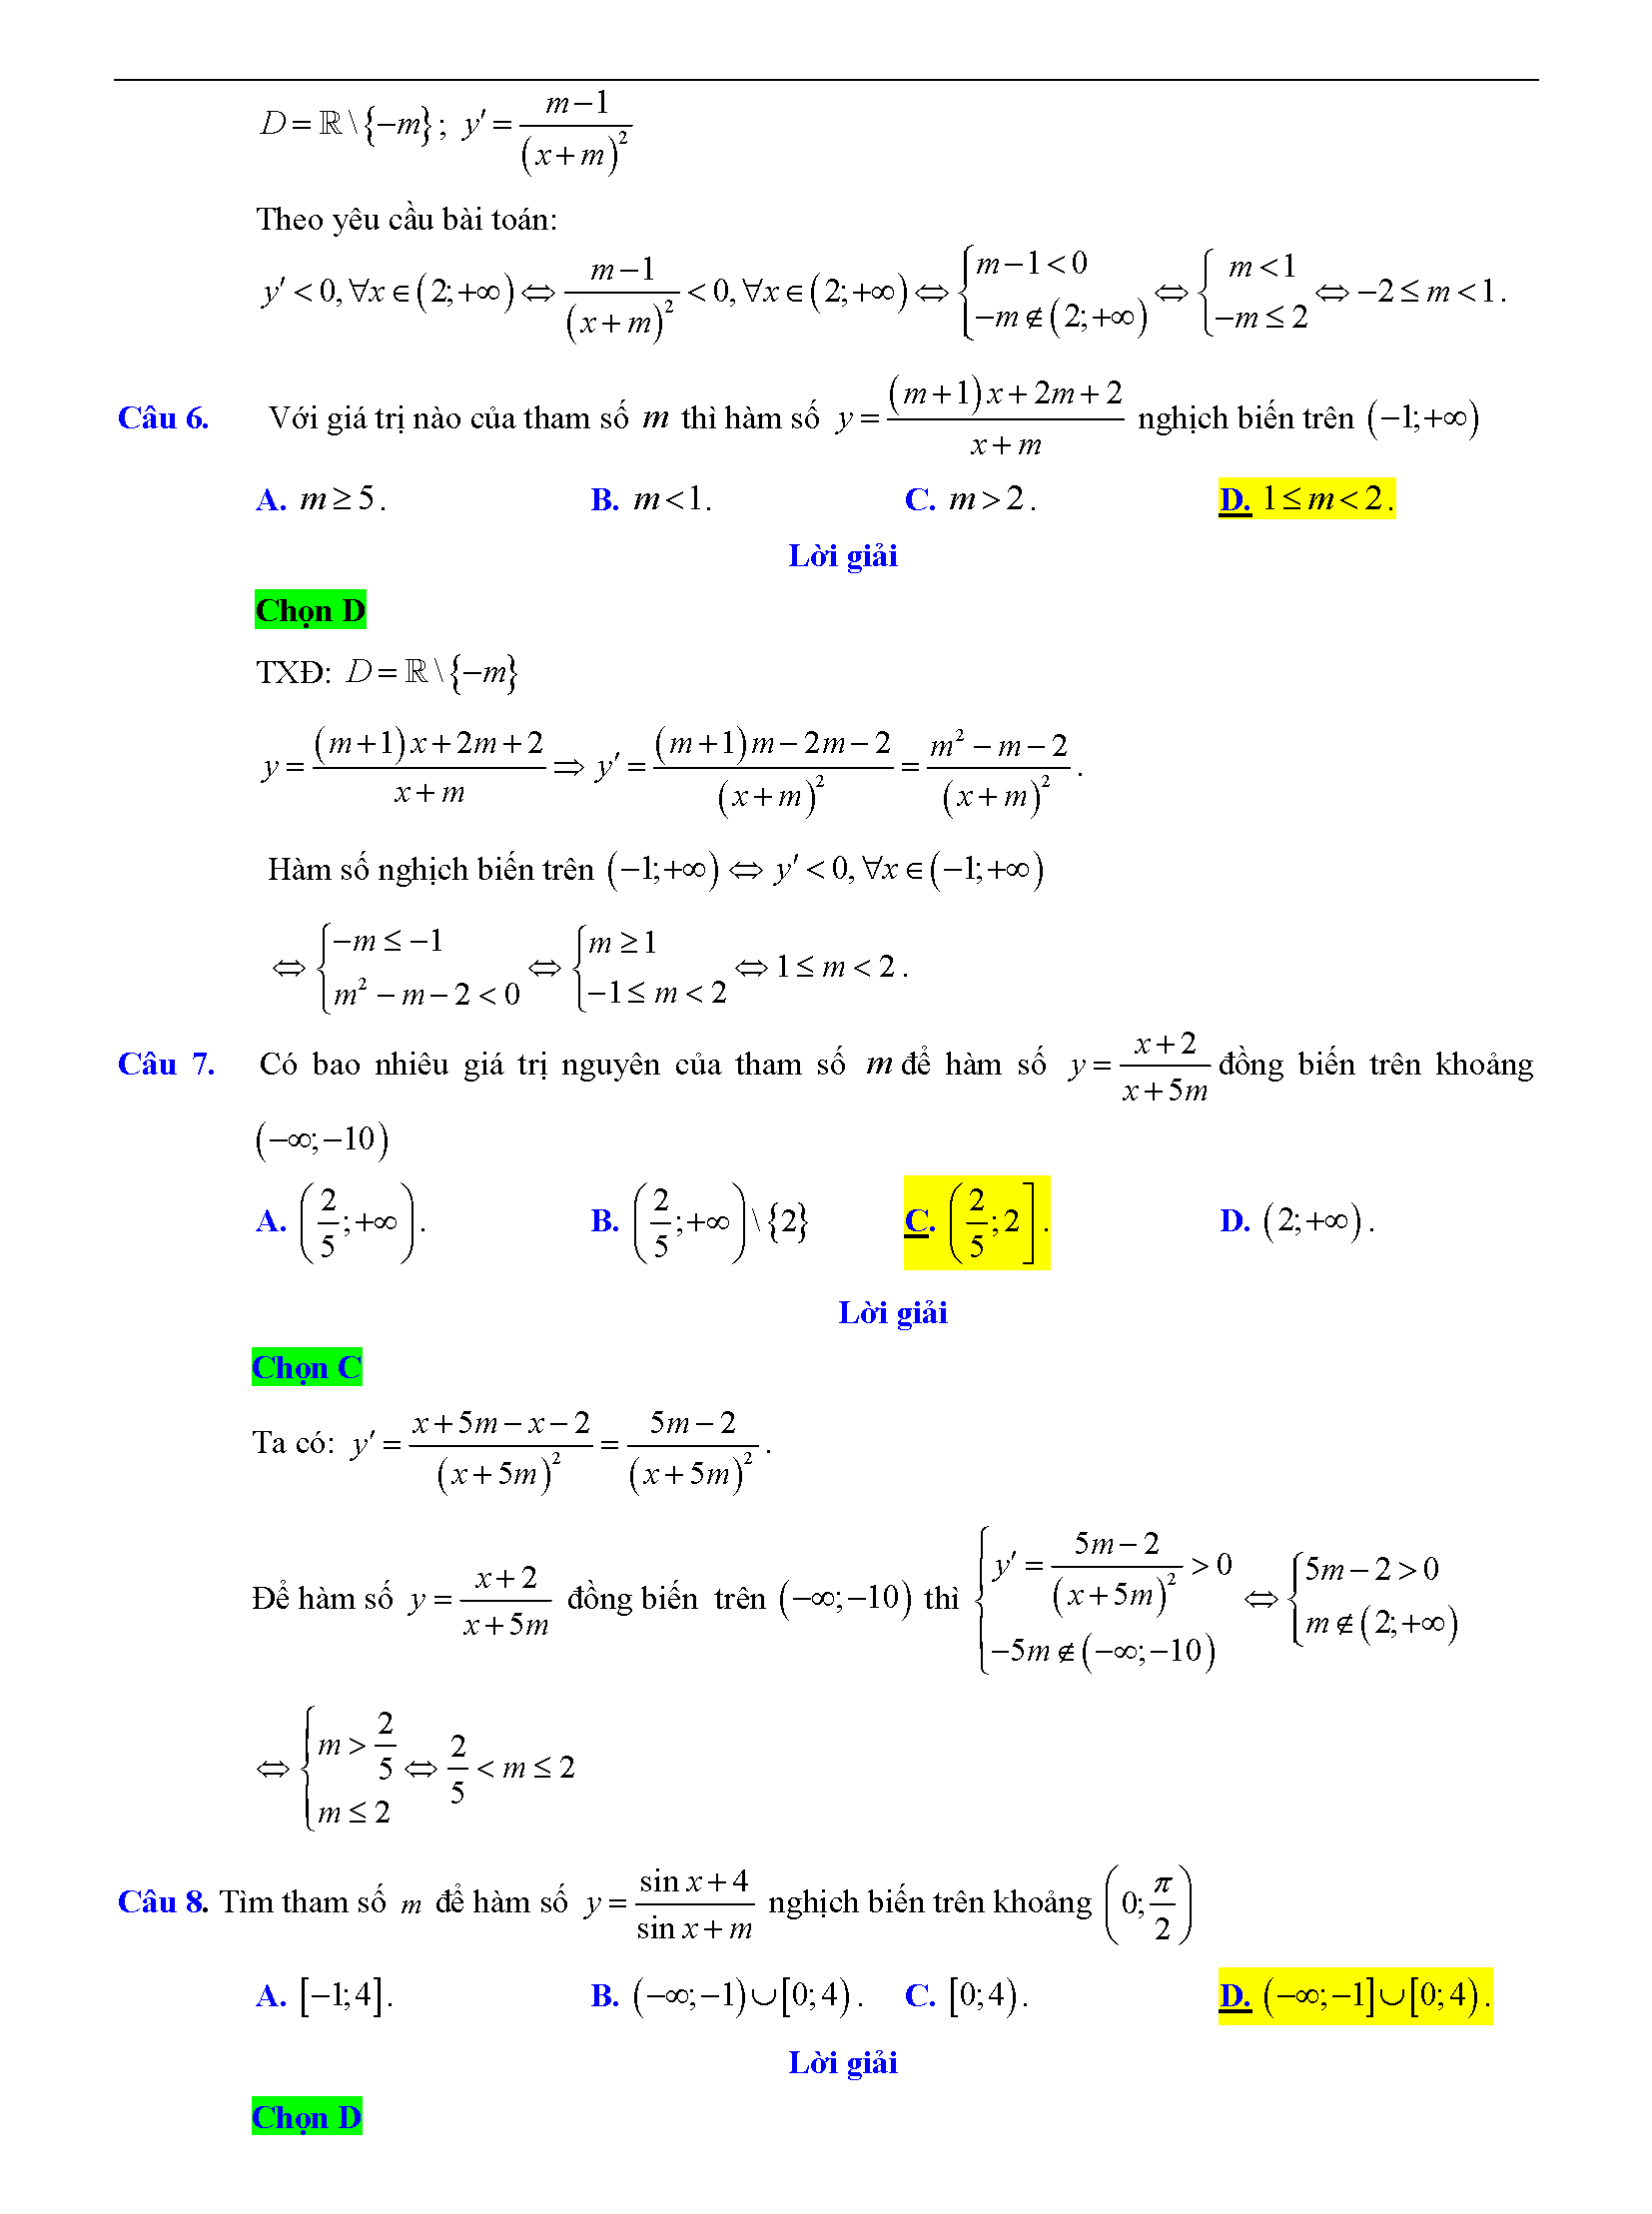 Trắc nghiệm tìm m để hàm số đơn điệu 9